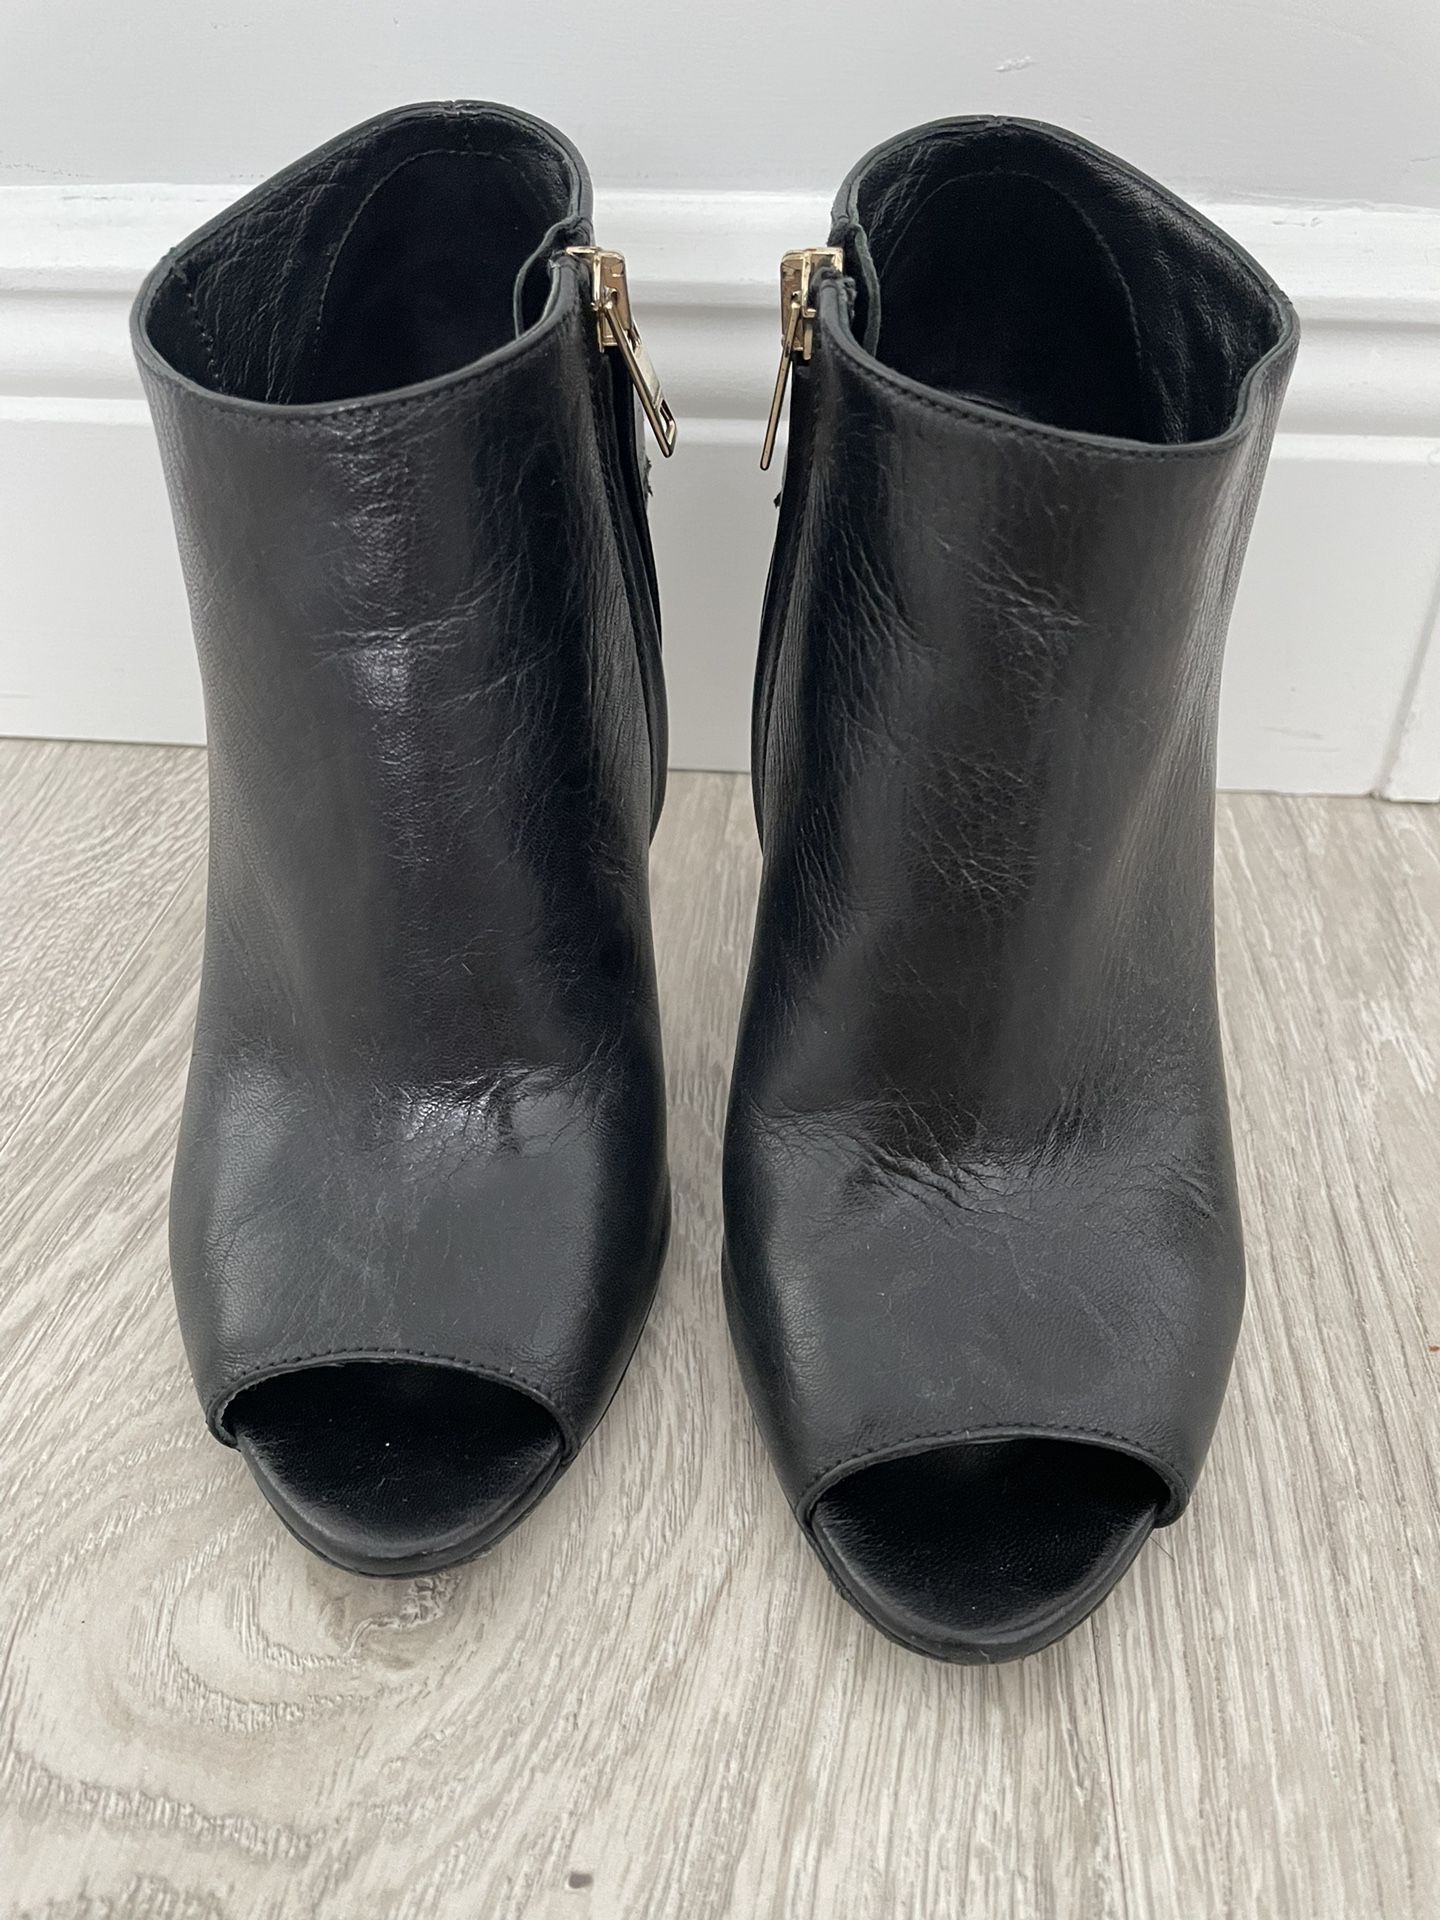 Burberry Women Black booties. Size US 7